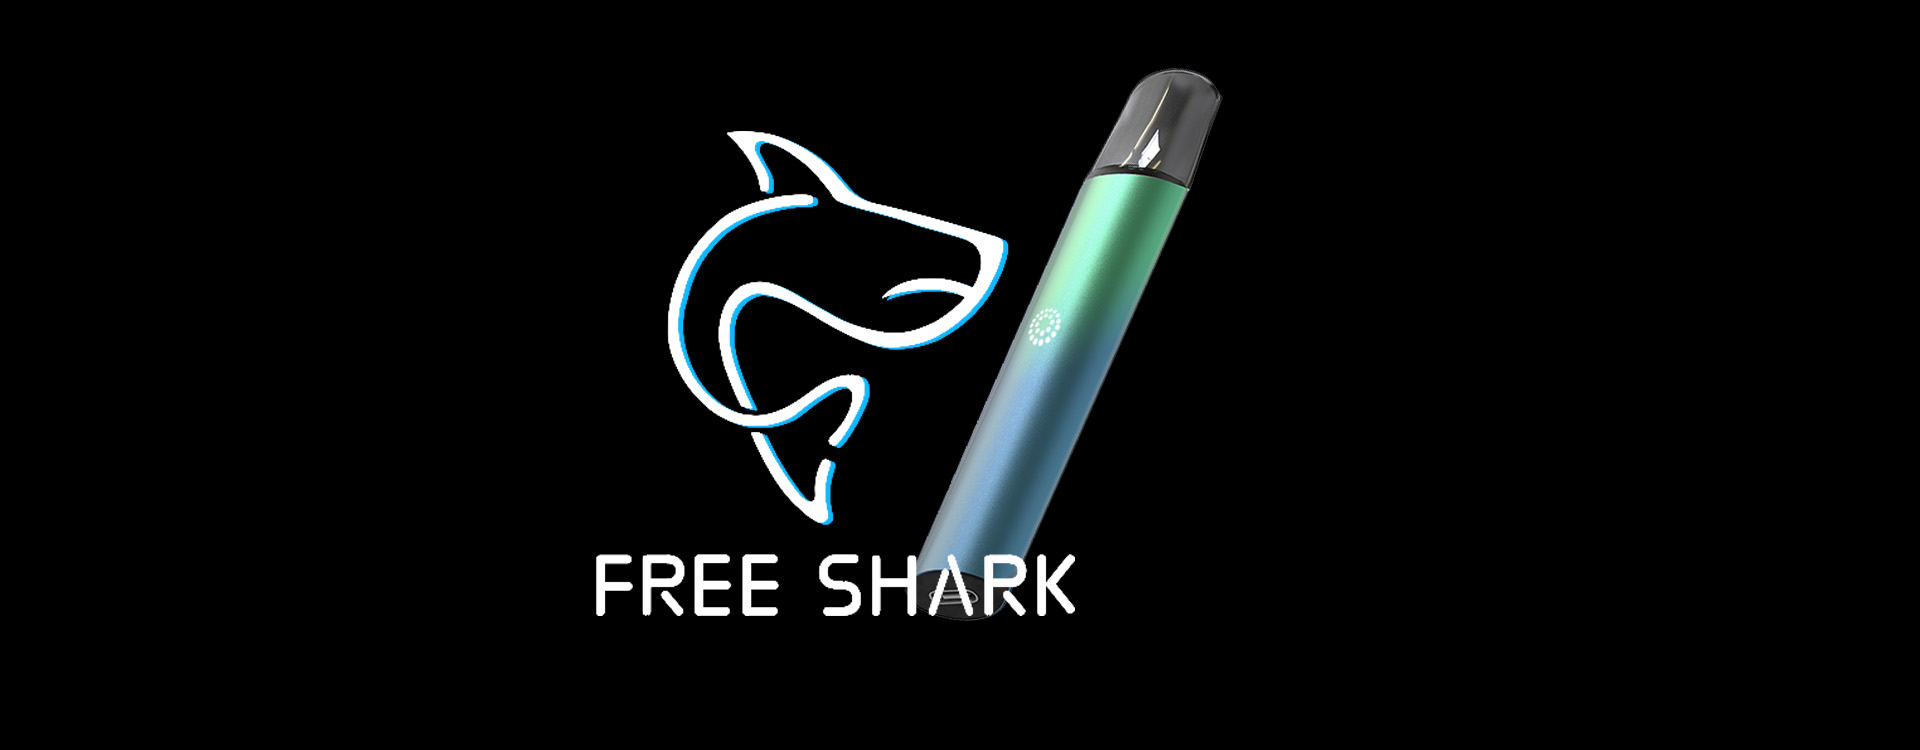 freeshark markası